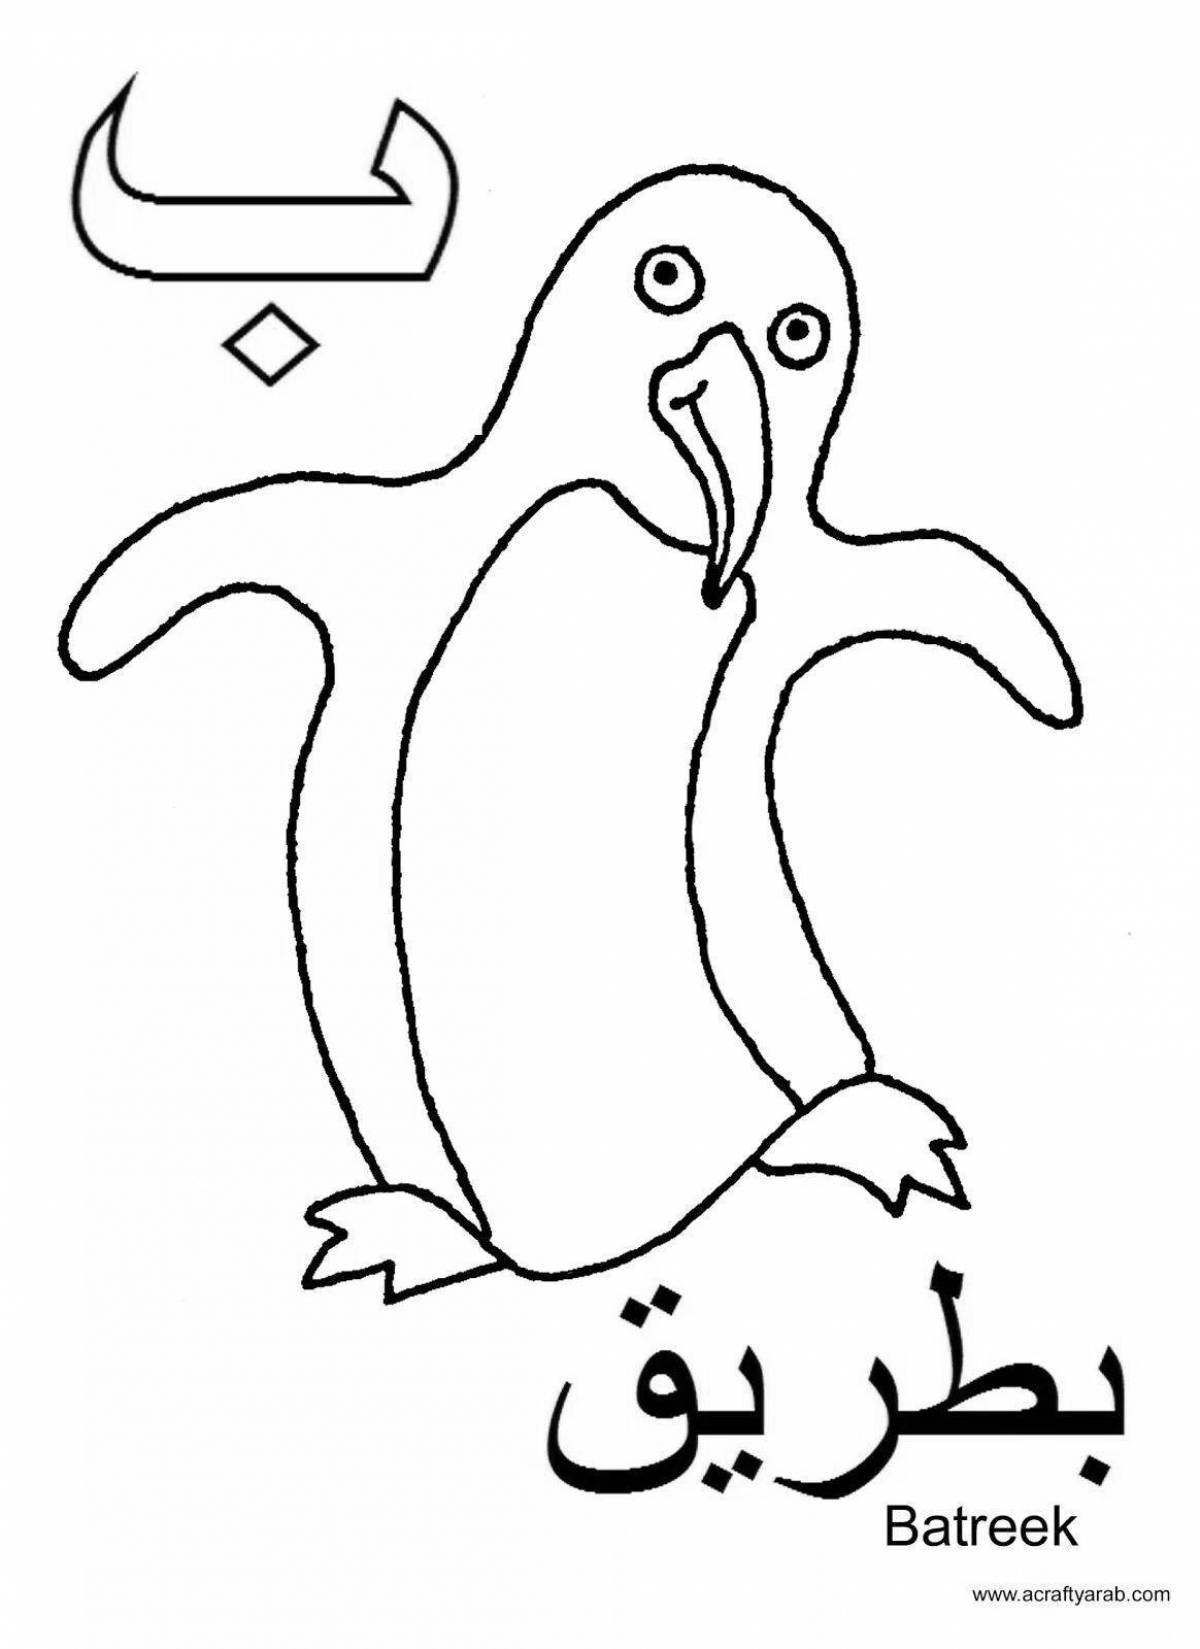 Раскраска с арабскими буквами для детей